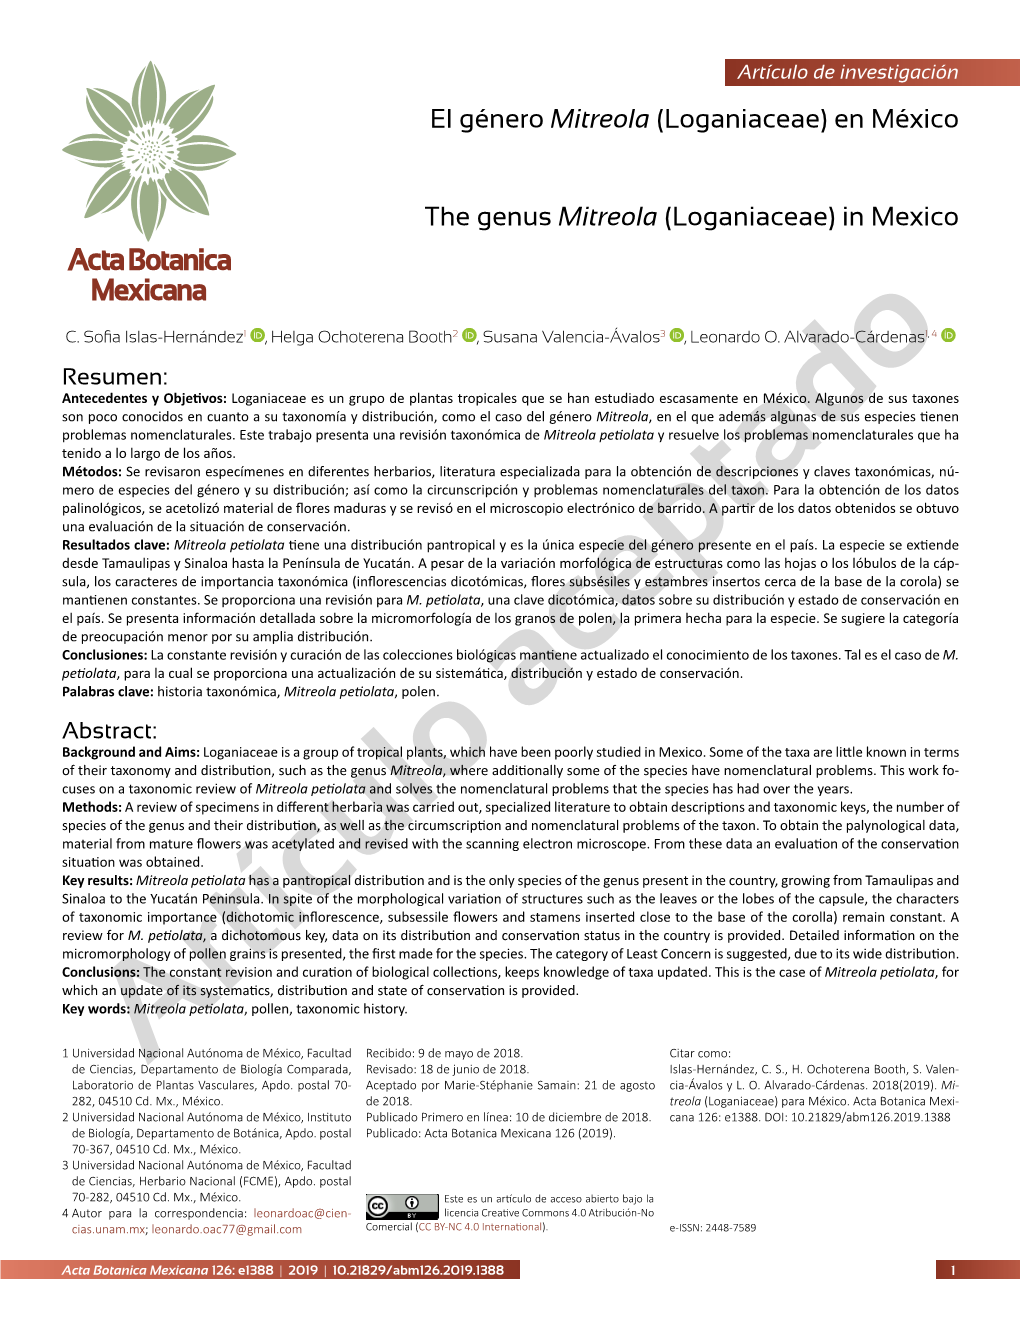 El Género Mitreola (Loganiaceae) En México